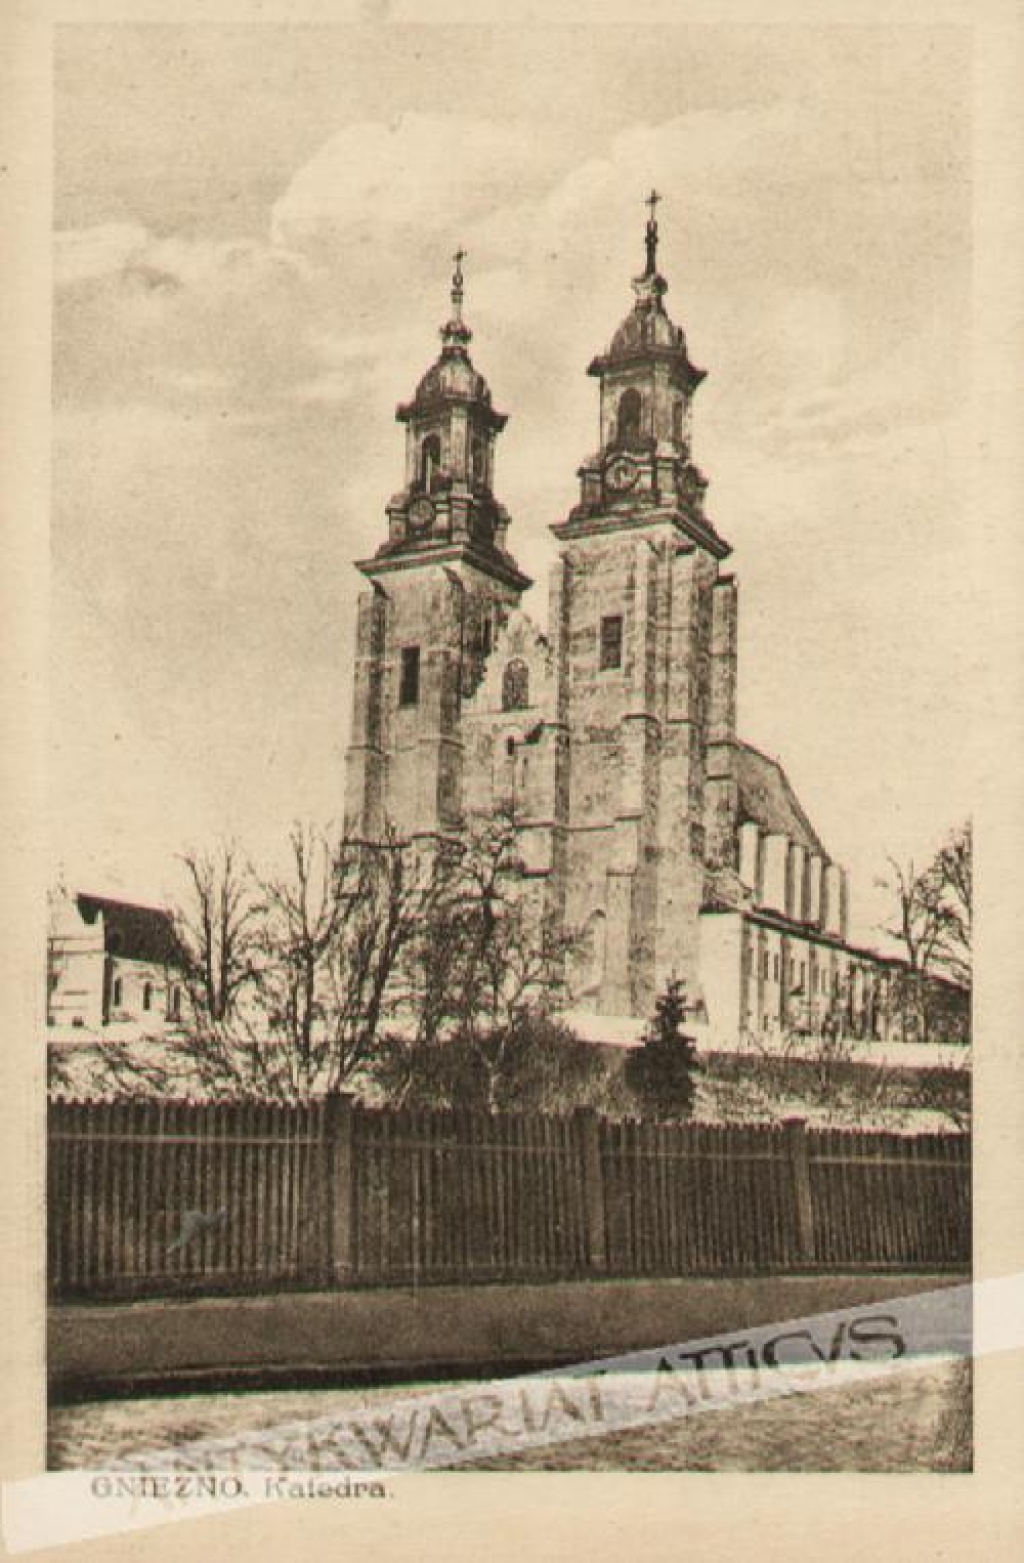 [pocztówka, lata 1920] Gniezno. Katedra